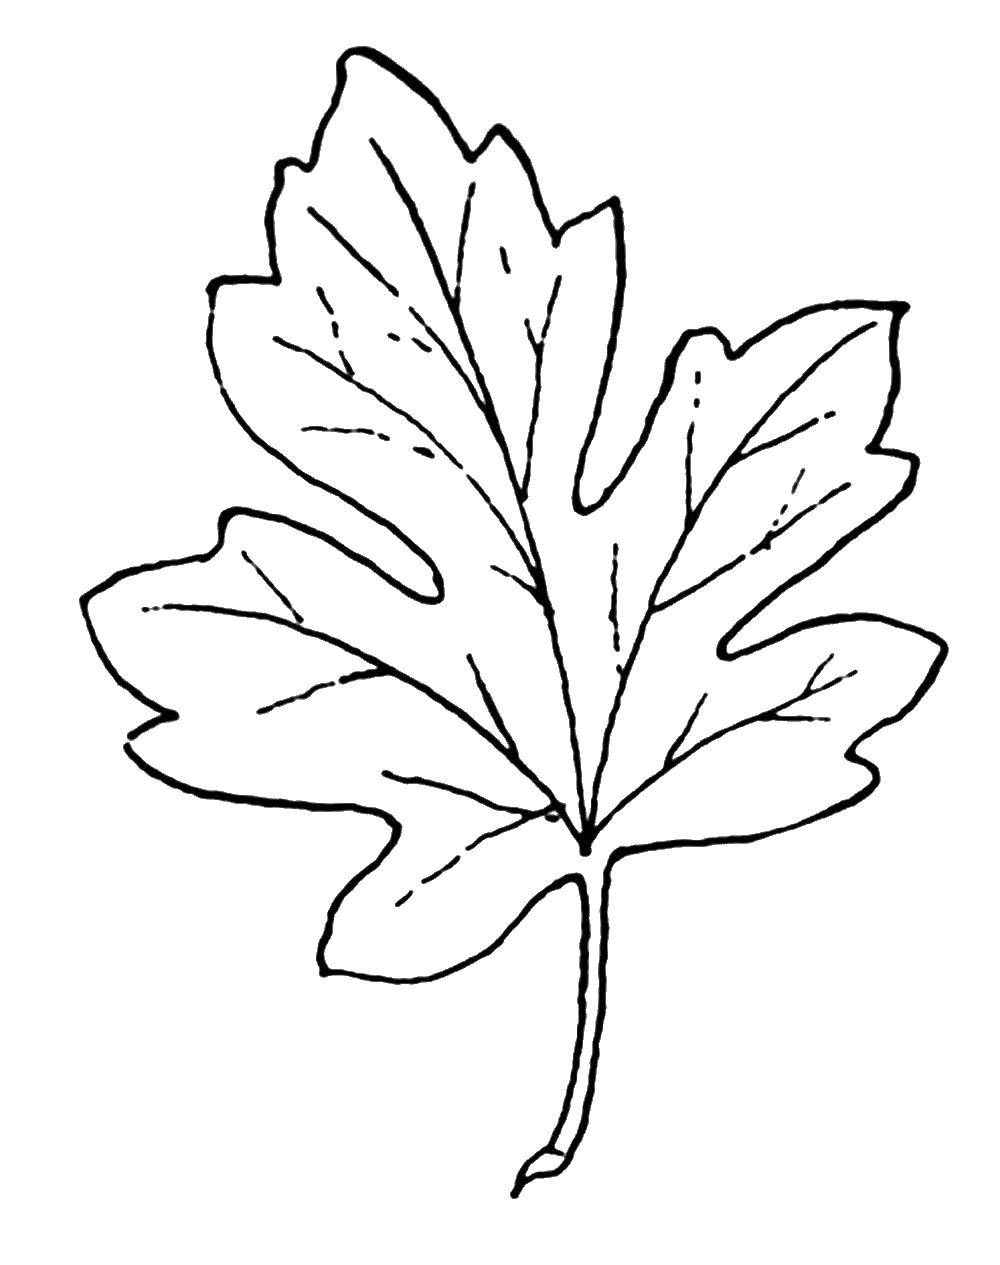 Название: Раскраска Лист. Категория: Контуры листьев. Теги: лист.